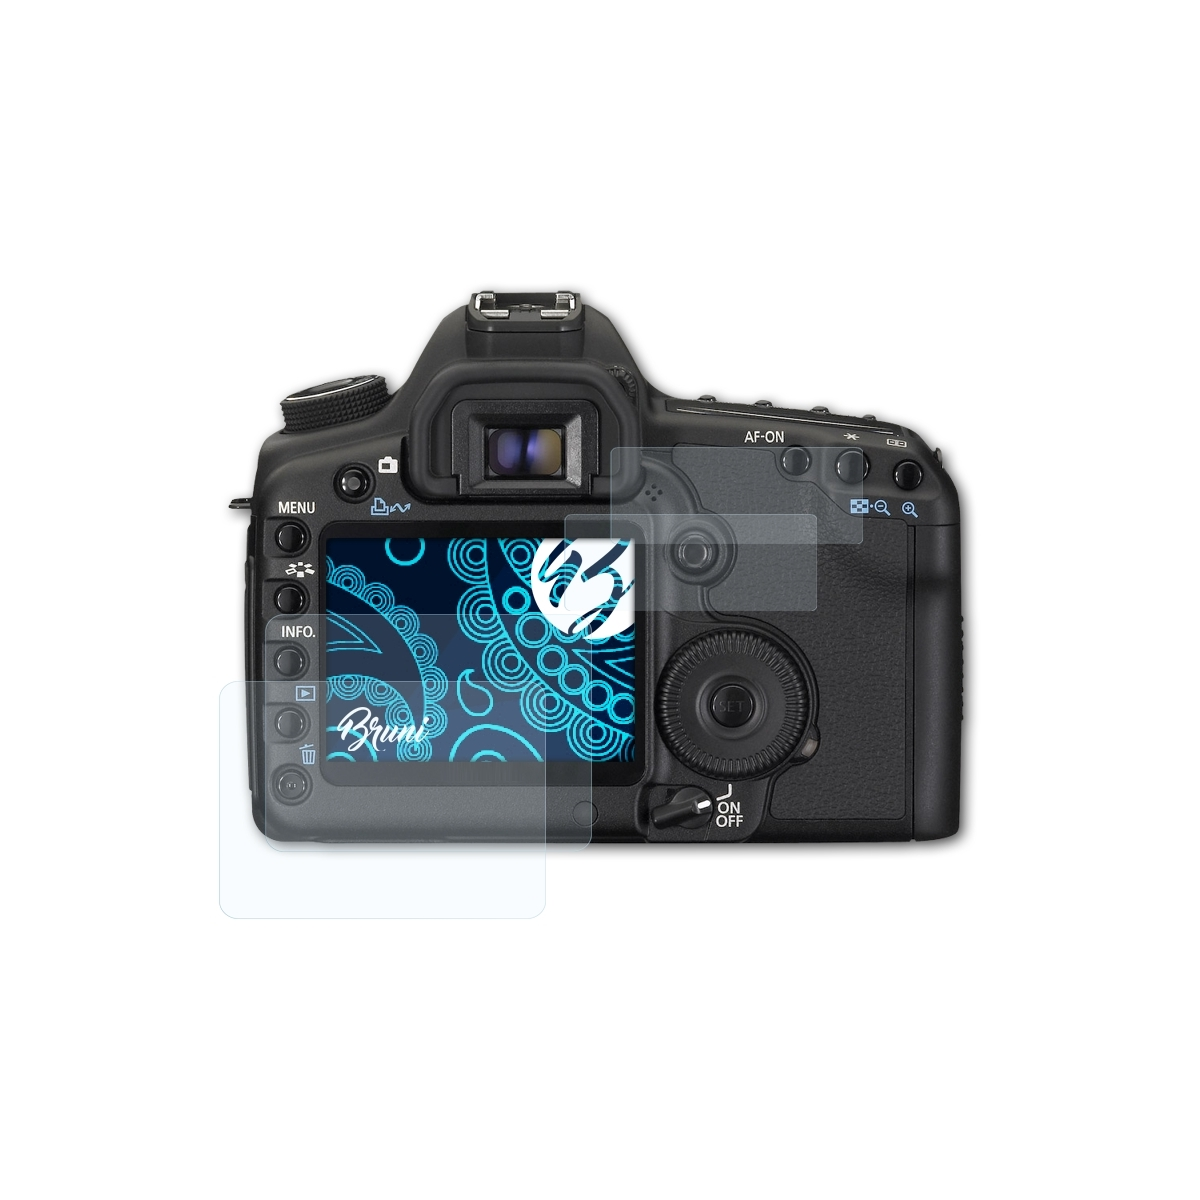 BRUNI 2x Basics-Clear Schutzfolie(für II) Mark EOS Canon 5D